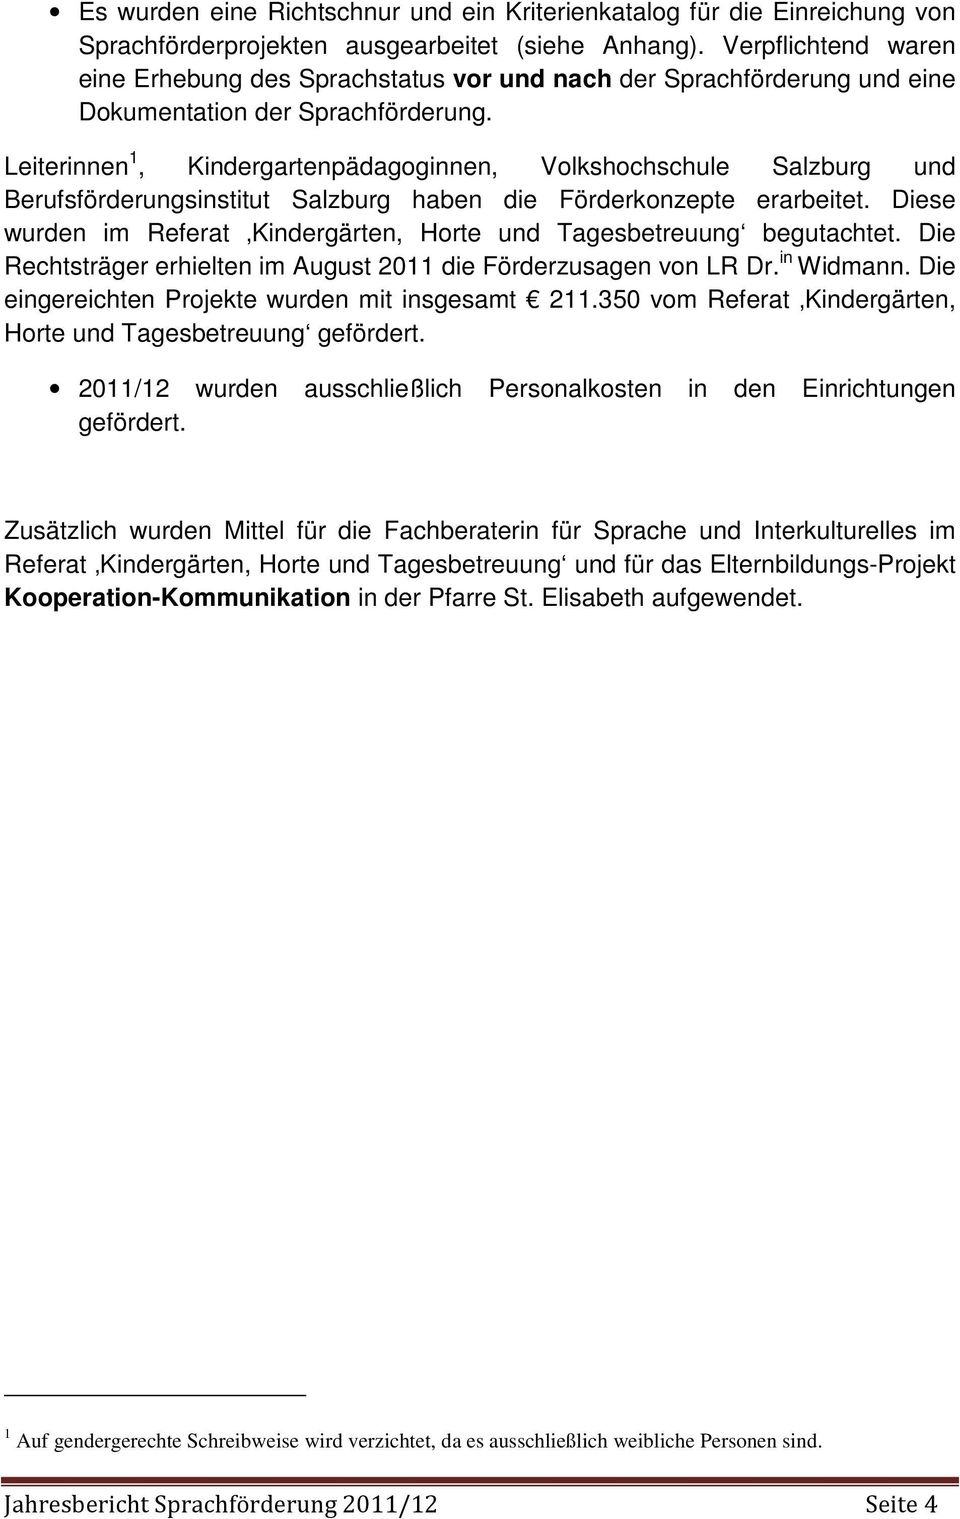 Leiterinnen 1, Kindergartenpädagoginnen, Volkshochschule Salzburg und Berufsförderungsinstitut Salzburg haben die Förderkonzepte erarbeitet.